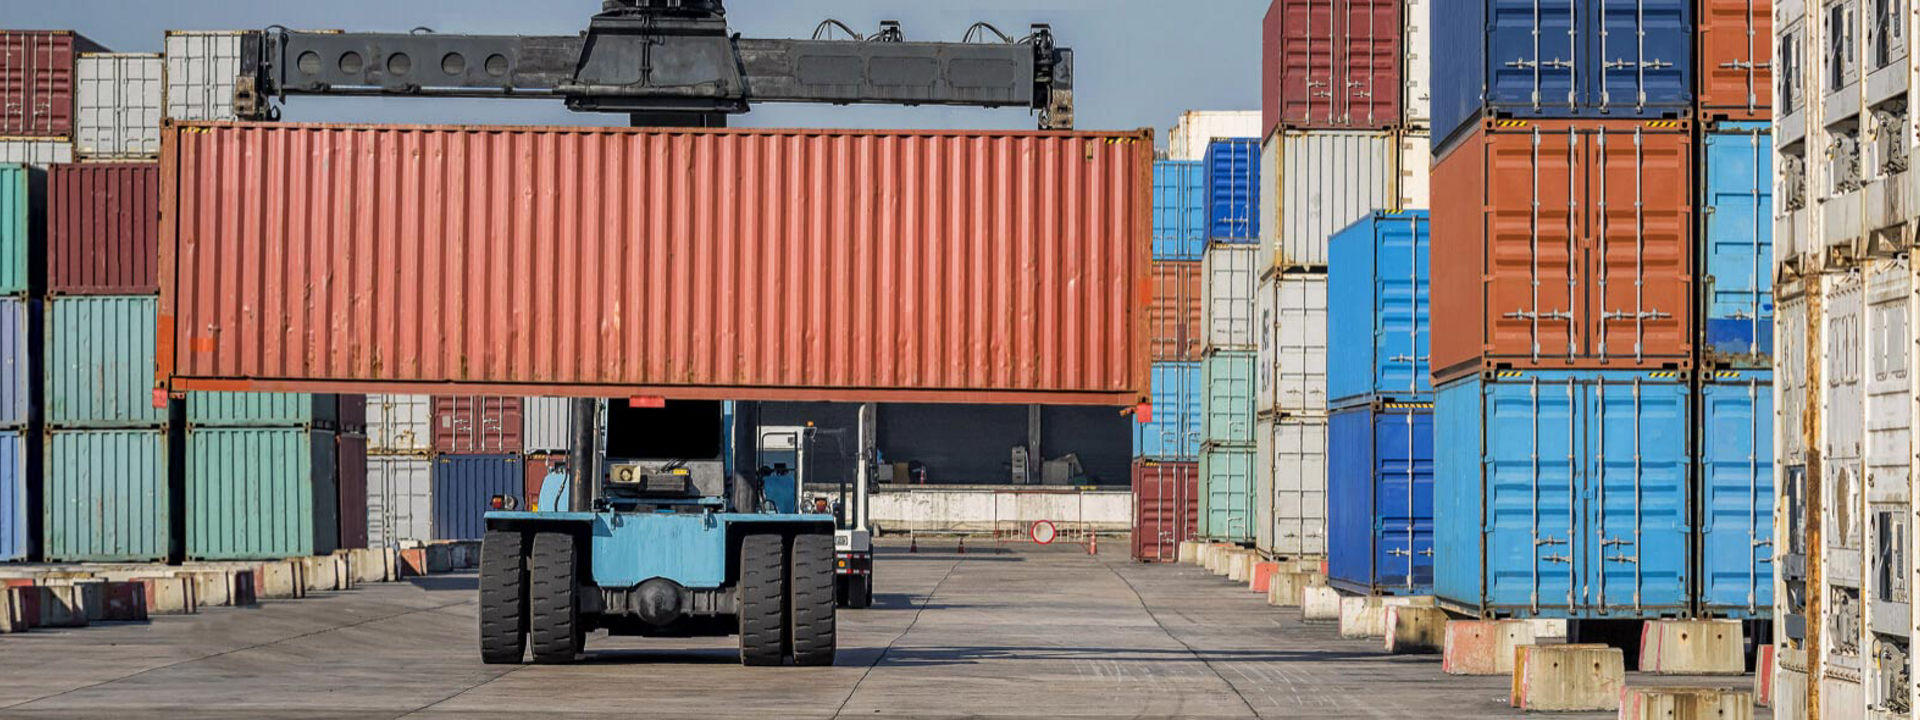 Nosič kontejnerů vybavený OTR pneumatikami Bridgestone převáží přepravní kontejnery ve velkém průmyslovém přístavu.